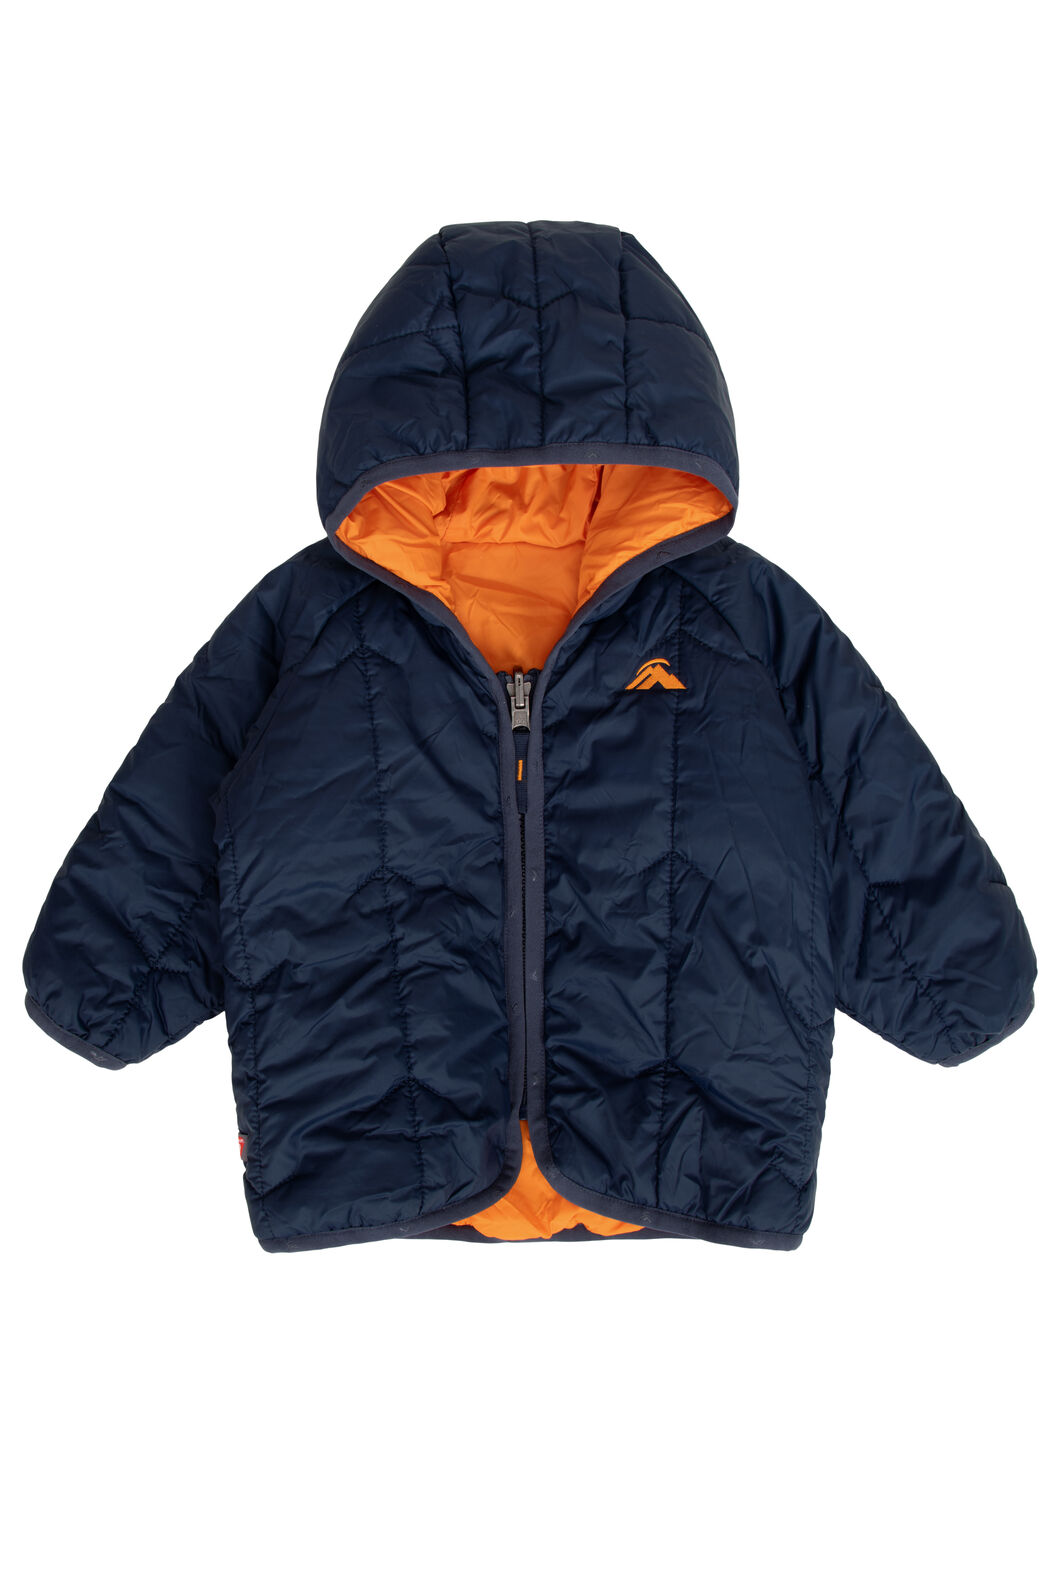 Macpac Baby Pulsar PrimaLoft® Hooded Jacket, Black Iris/Russet Orange, hi-res